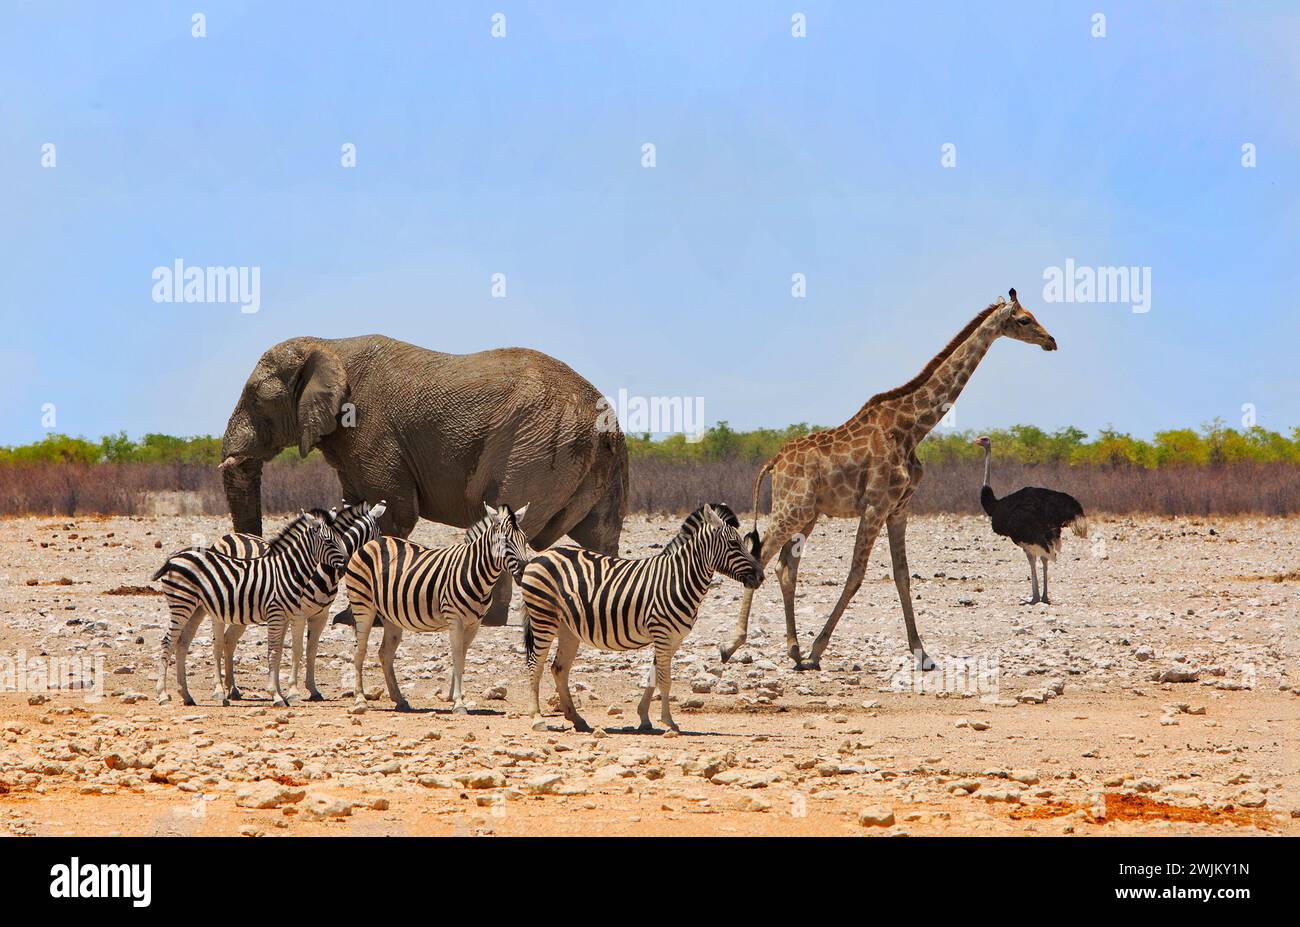 Legendärer afrikanischer Safari-Duft mit Elefant, Giraffe und Zebra, die in der trockenen, trockenen afrikanischen Ebene mit klarem blauen Himmel dicht beieinander stehen Stockfoto